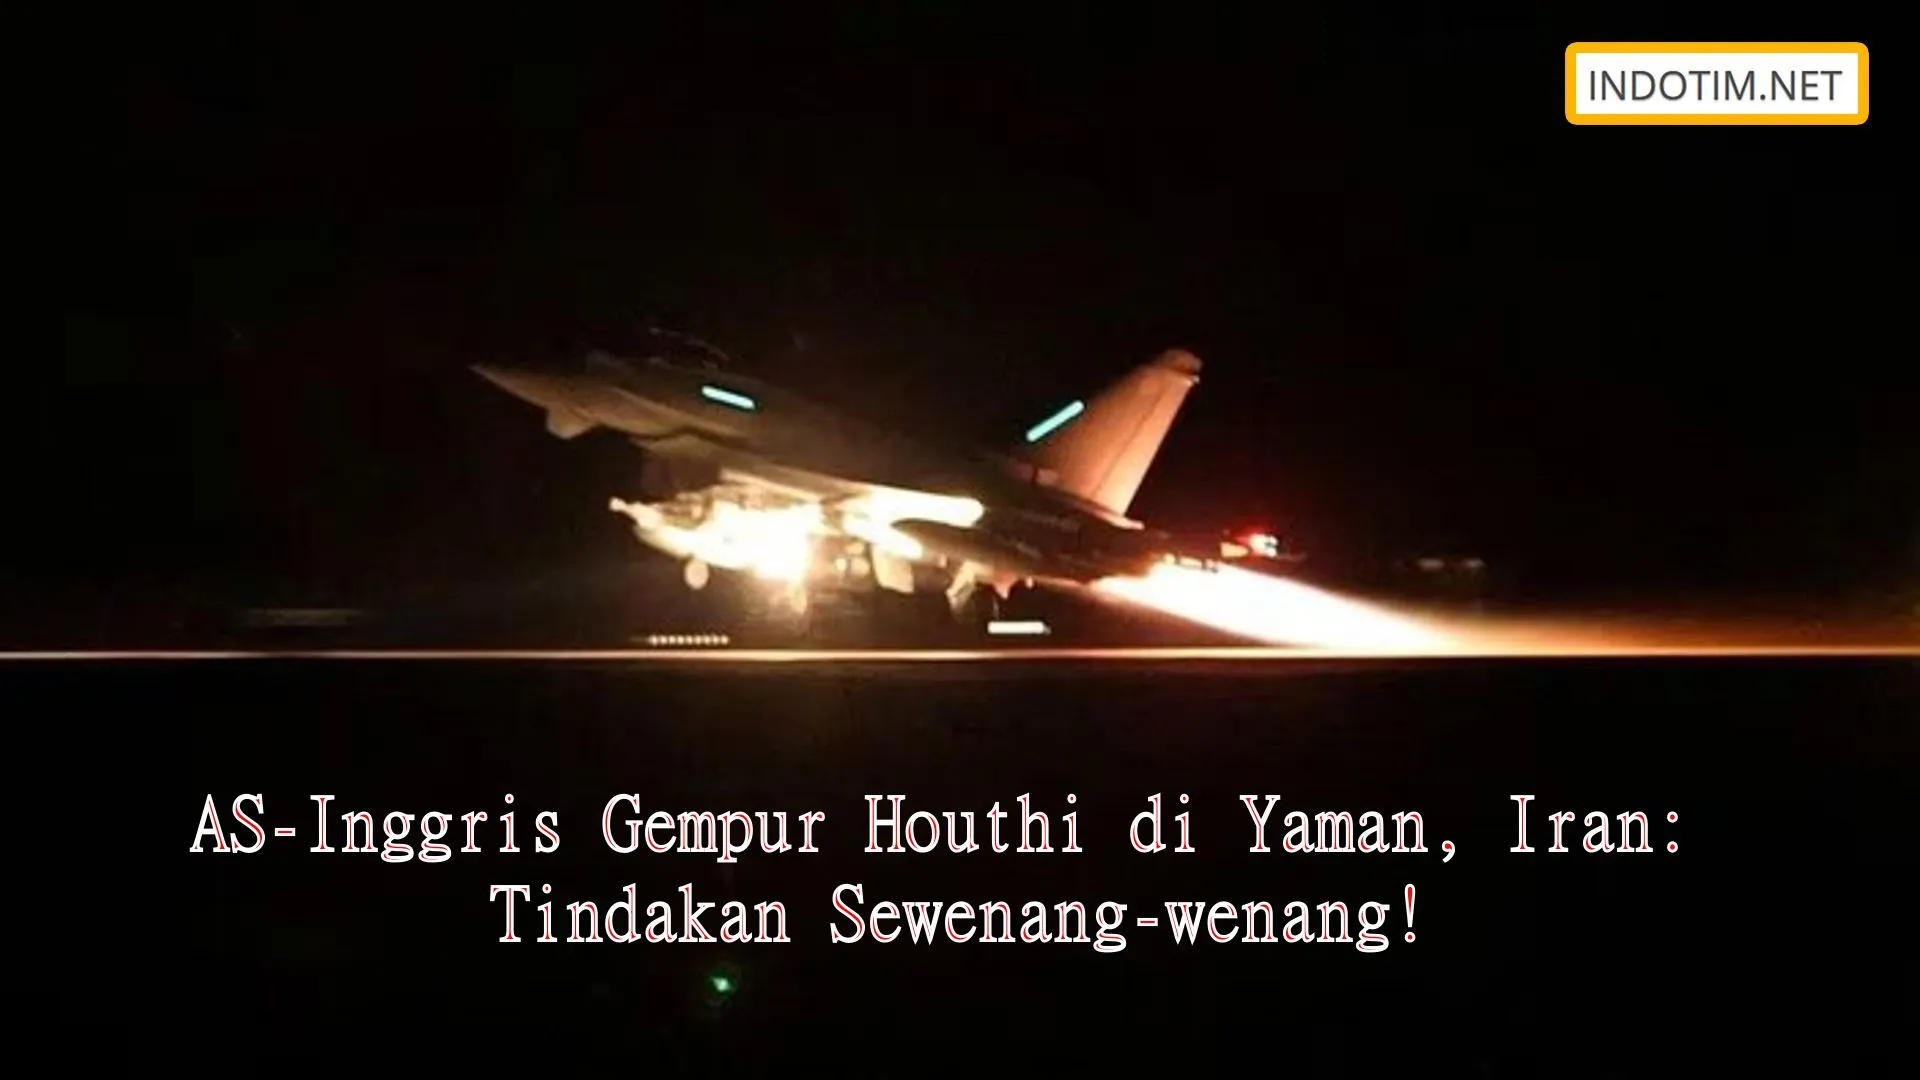 AS-Inggris Gempur Houthi di Yaman, Iran: Tindakan Sewenang-wenang!